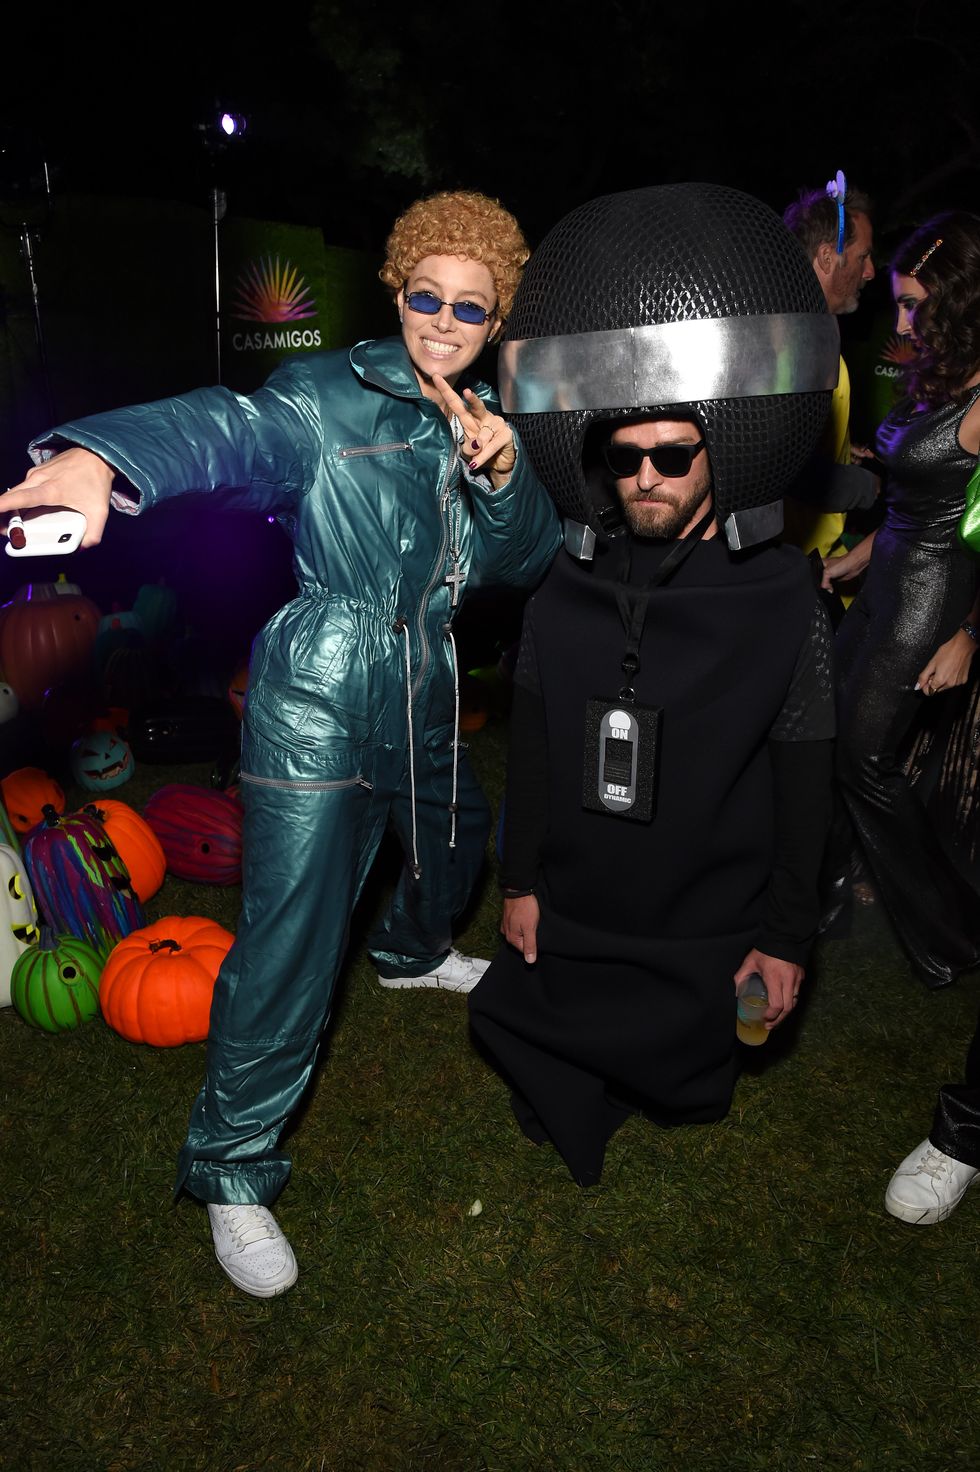   Jessica Biel hóa thân thành Justin Timberlake thời * NSYNC  trong khi Justin Timberlake biến thành chiếc mic di động trong tiệc Halloween của Casamigos.  